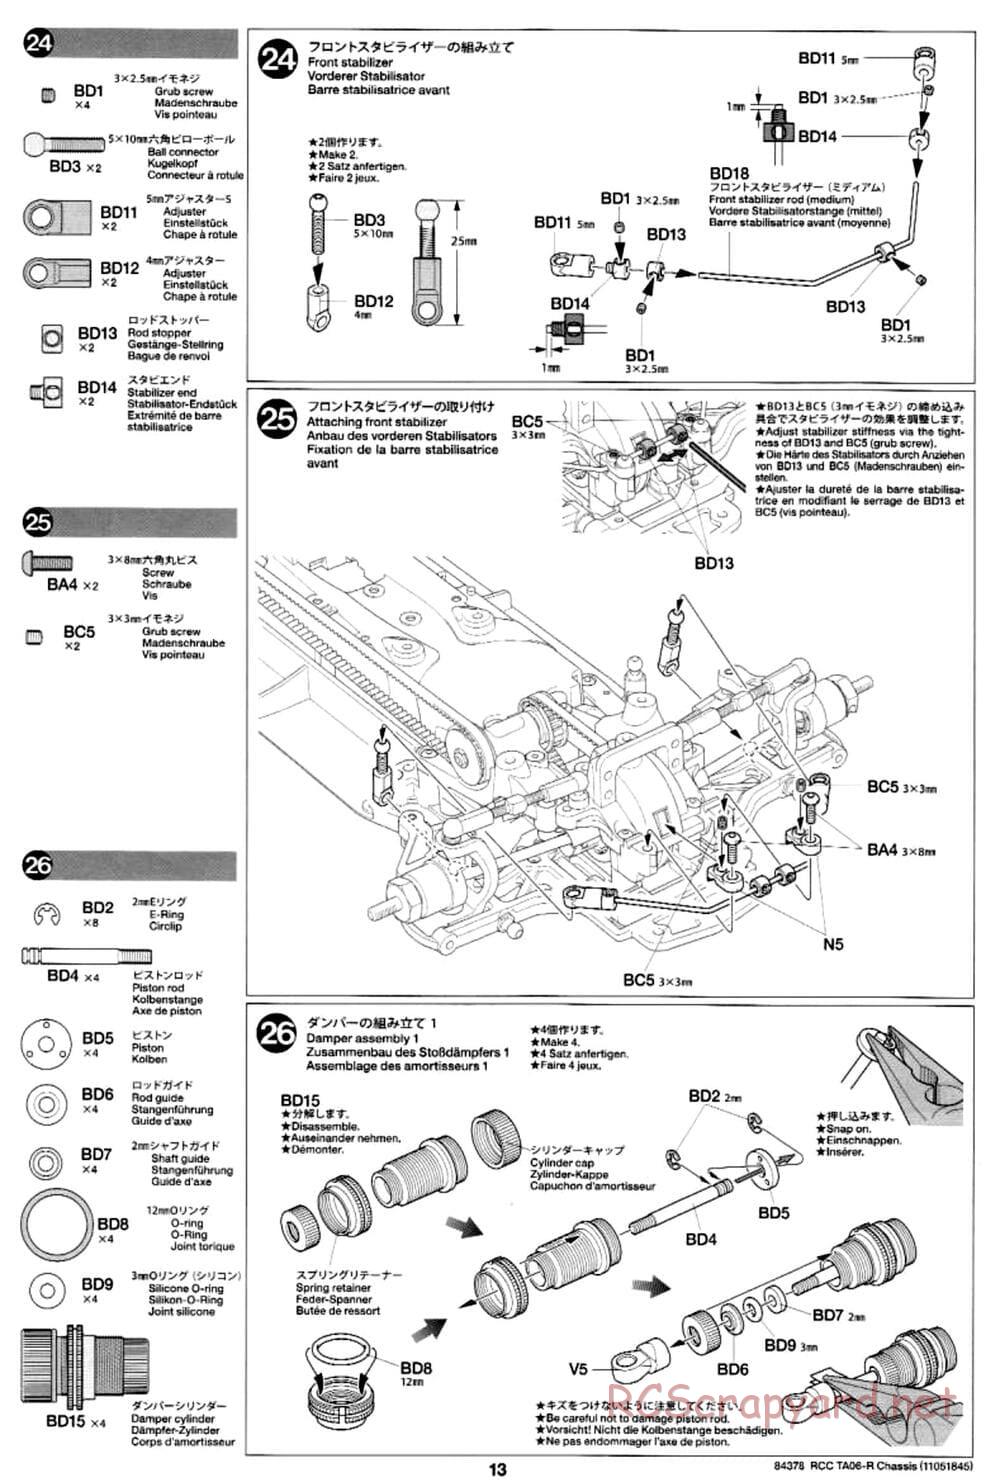 Tamiya - TA06-R Chassis - Manual - Page 13